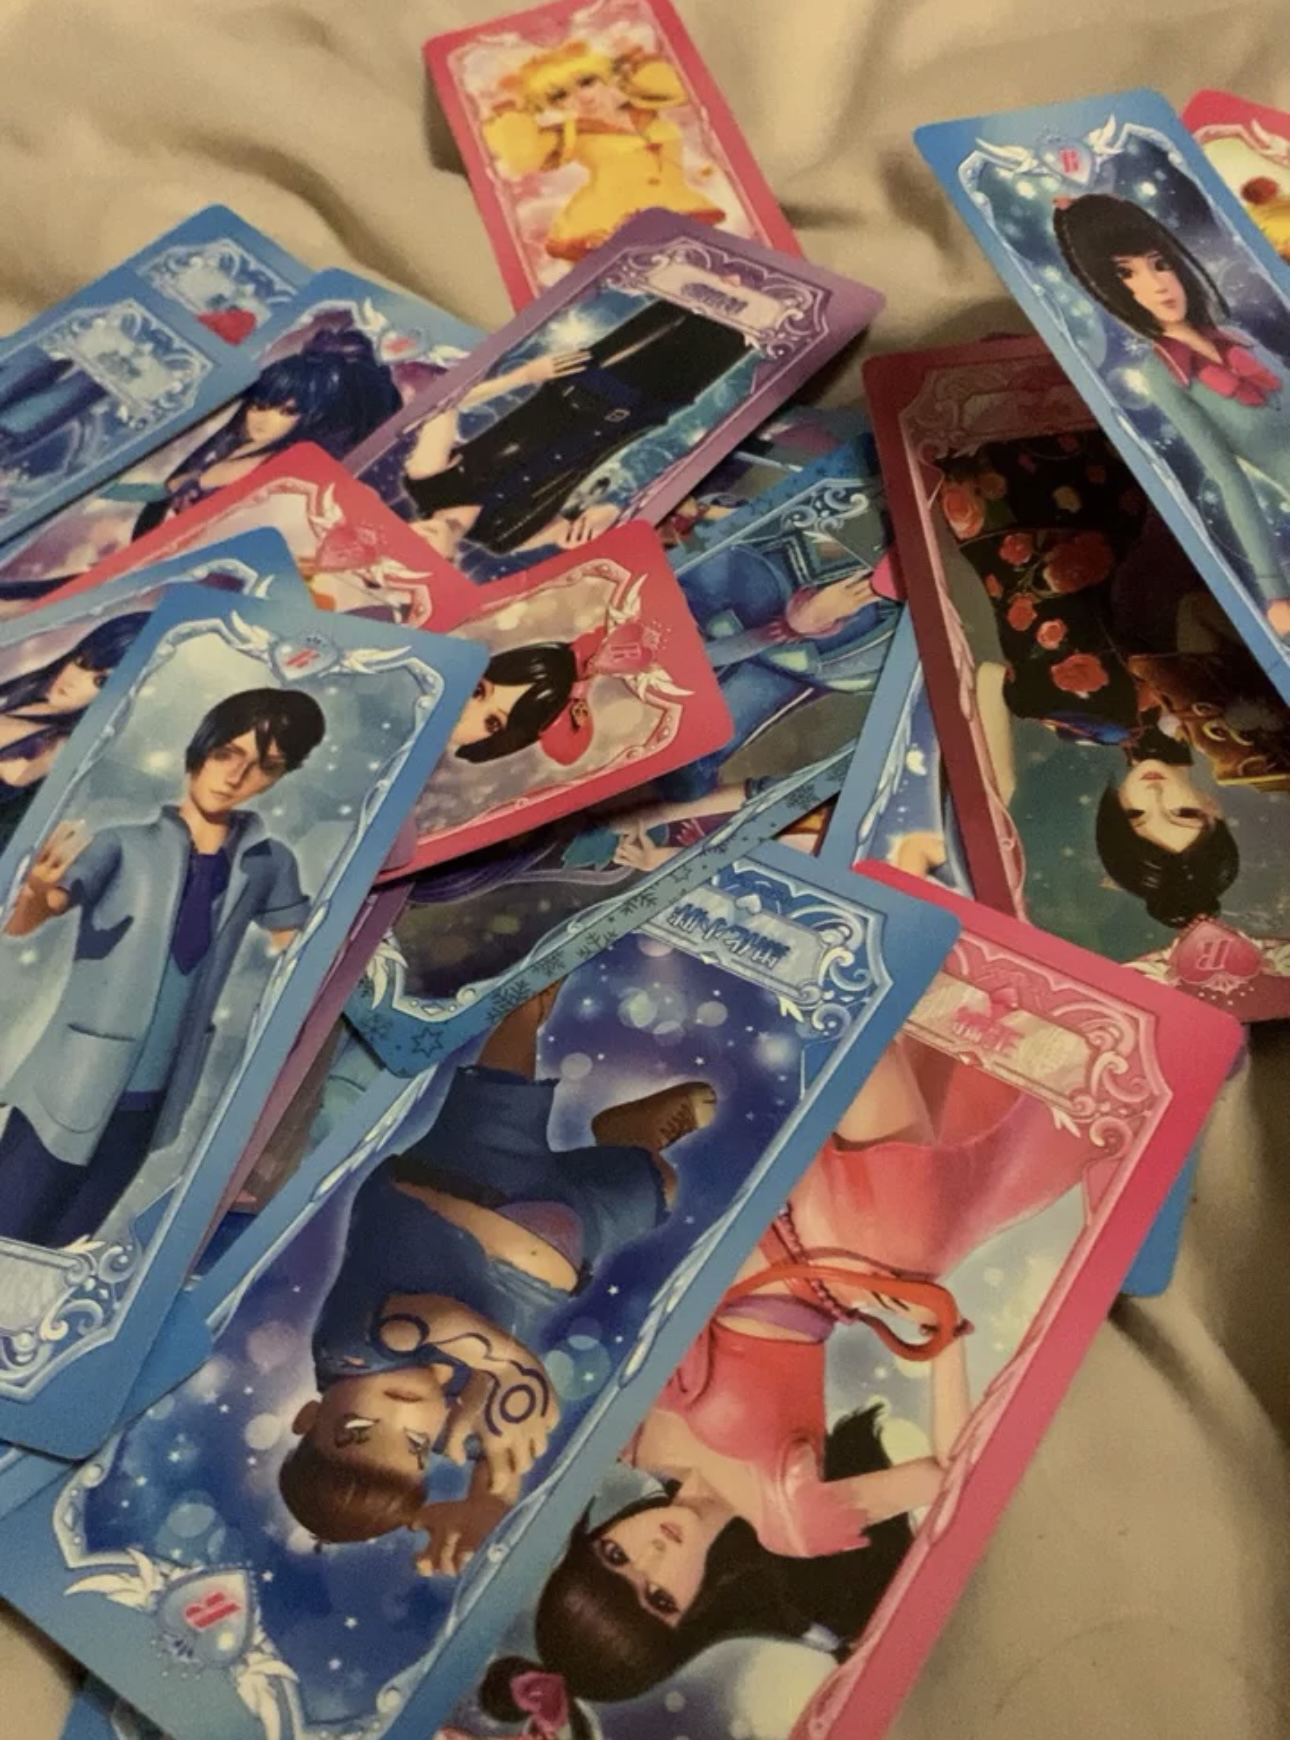 精灵梦叶罗丽卡片公主收藏卡册女孩玩具动漫游戏儿童卡牌全套 叶罗丽仙境魔法卡 20包晒单图